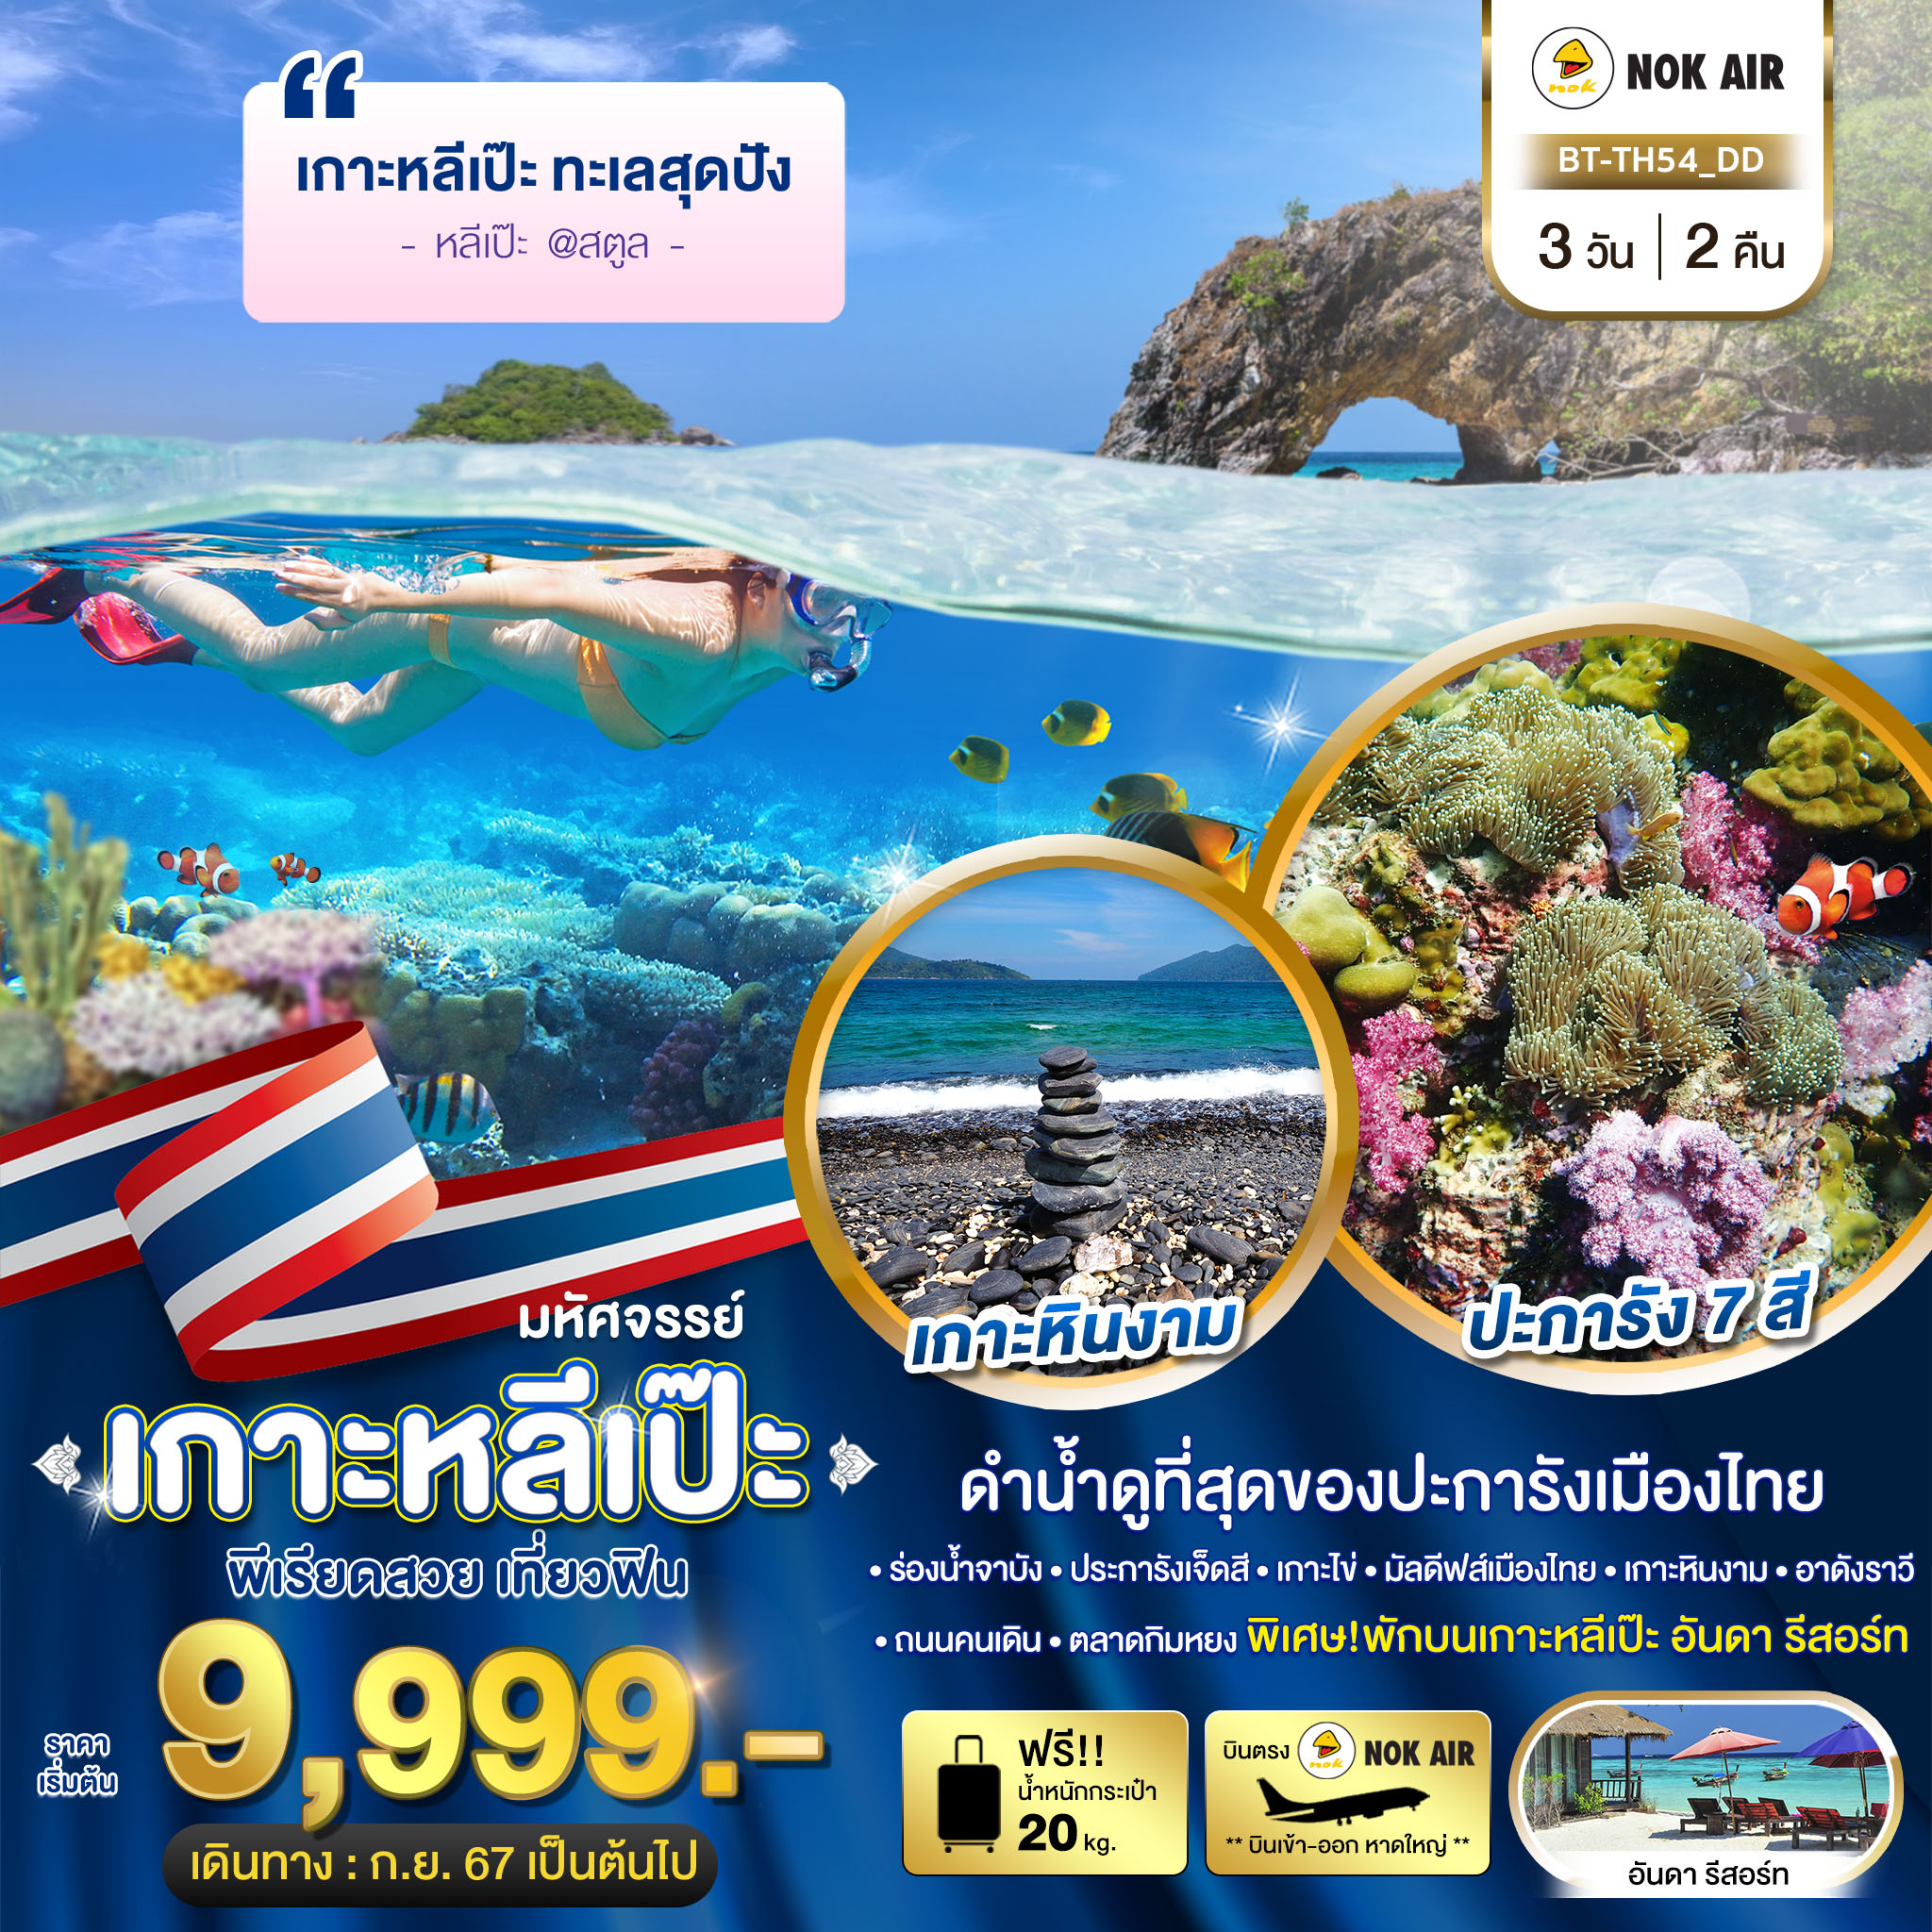 ทัวร์สตูล เกาะหลีเป๊ะ ทะเลสุดปัง ดำน้ำดูที่สุดของประการังเมืองไทย 3วัน 2คืน